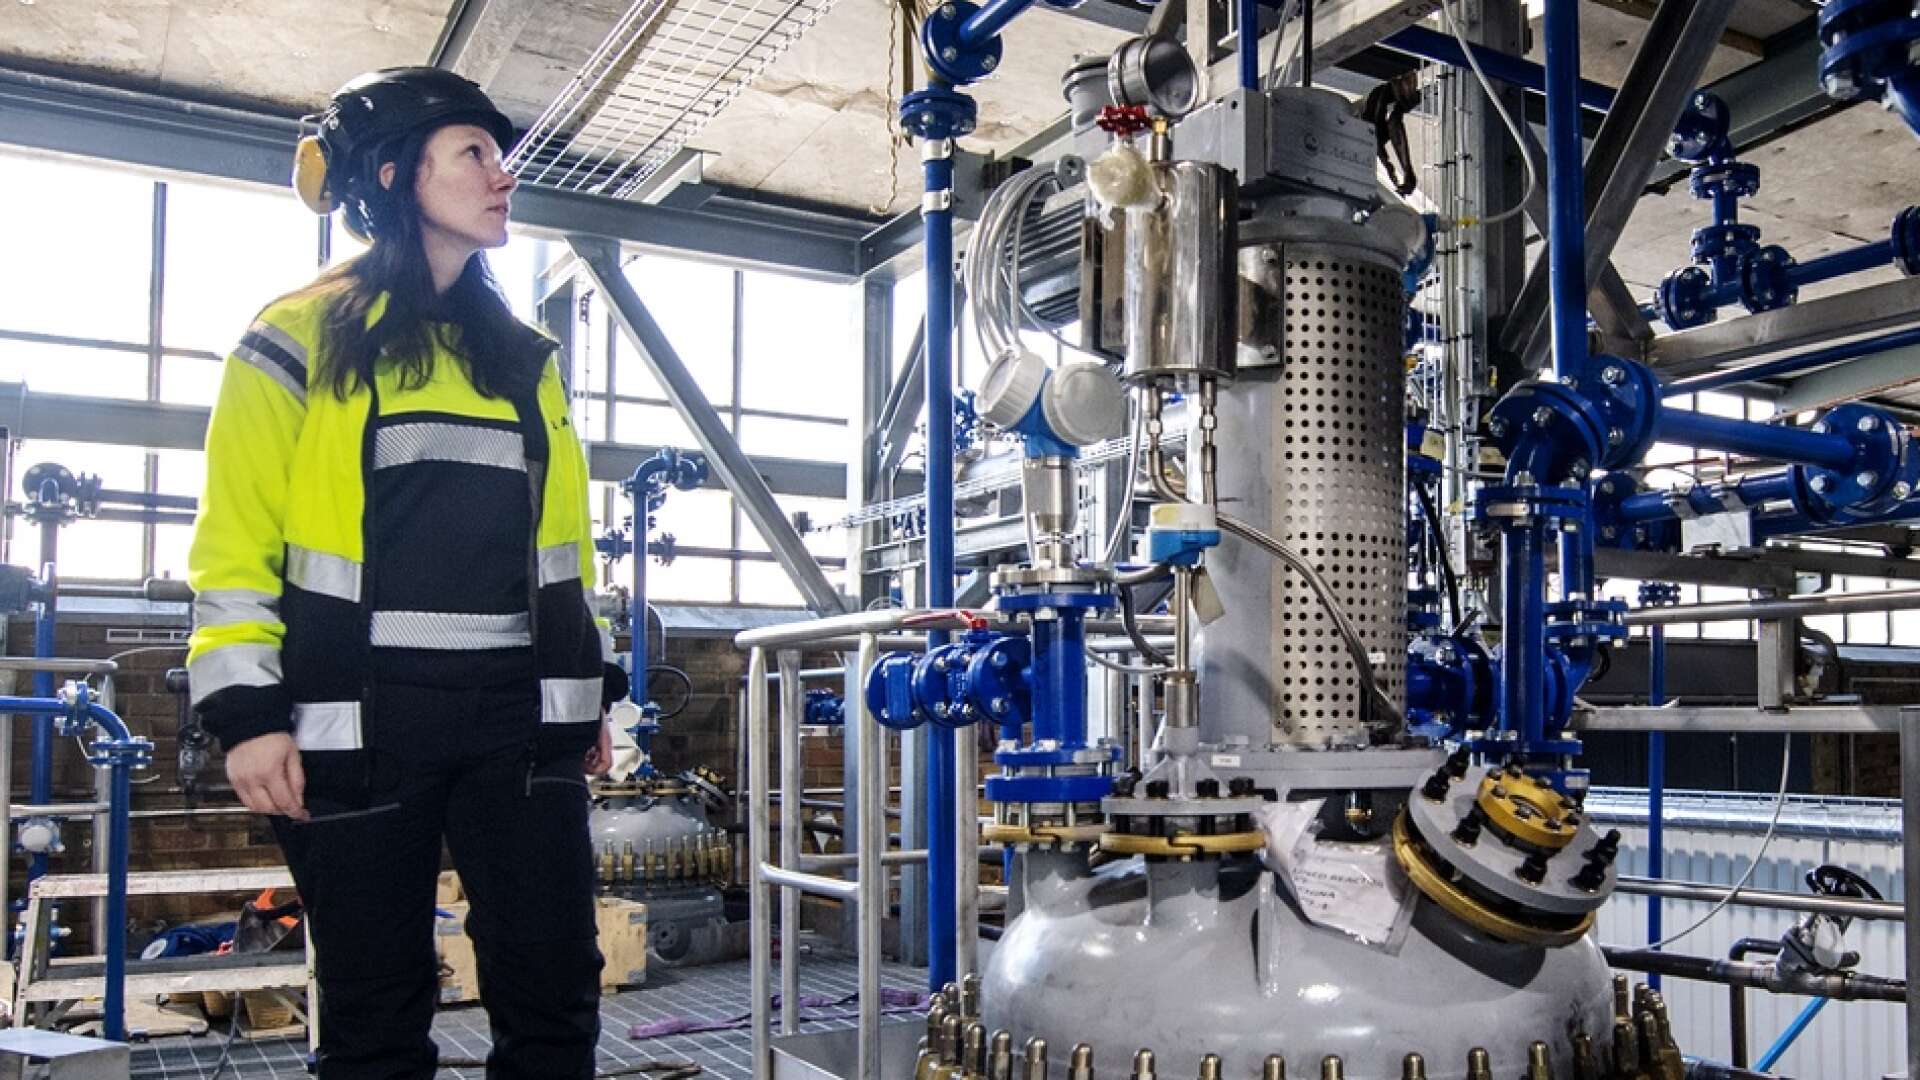 Lixeas unika process skiljer ut cellulosa och lignin från biomassa, förklarar Jennica Ivarsson.